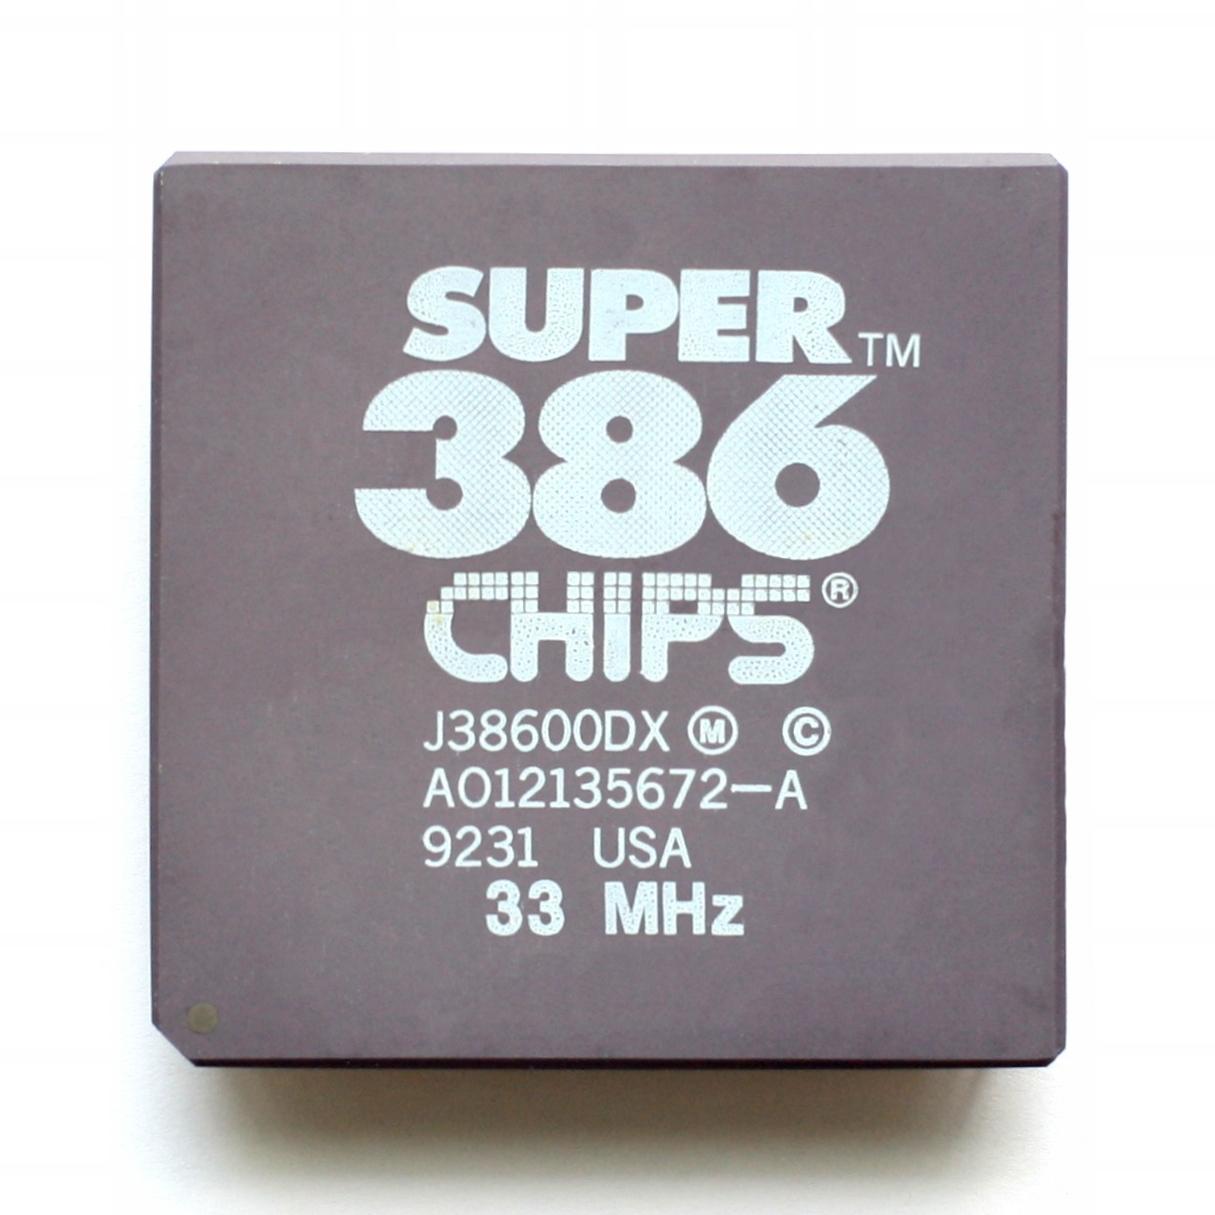 Super 386 fra Chips & Technologies slo ikke like godt an som Intels egne 386-brikker, men med utvikling av en prosessor i full sving nærmest på nabokontoret ga Wingine-utviklerne gode læringsmuligheter.Foto: Konstantin Lanzet, CC 3.0